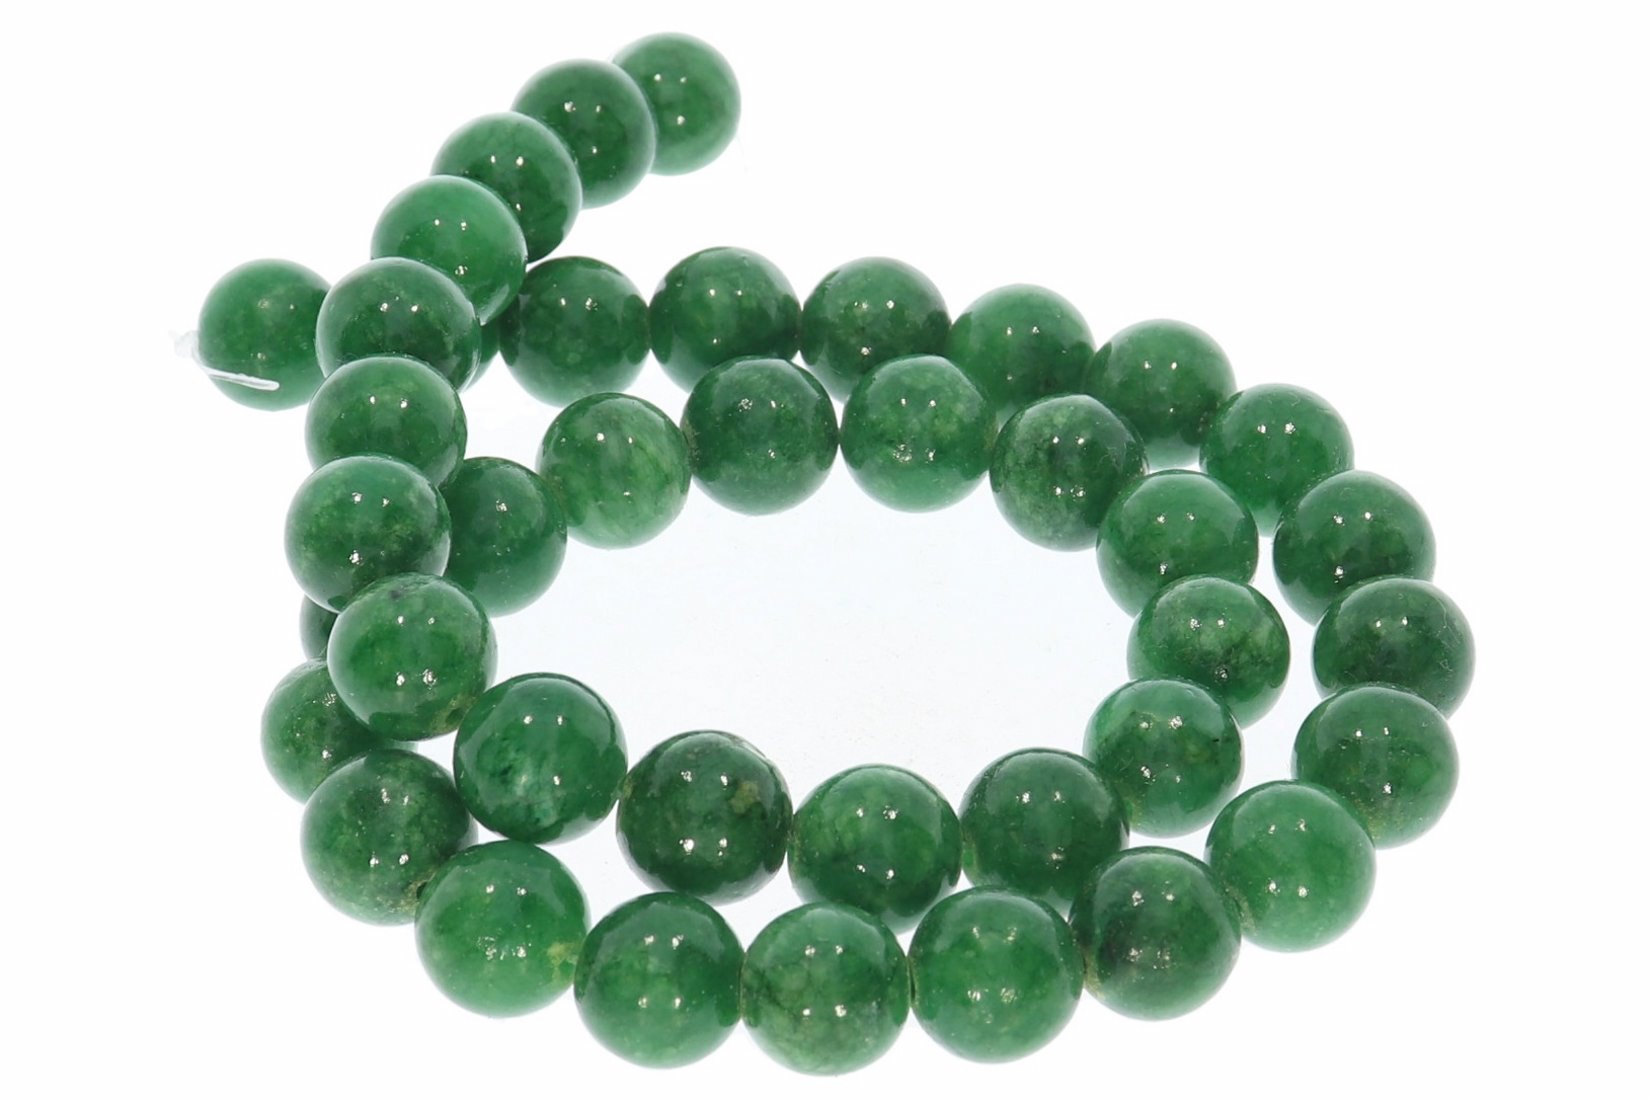 10S225 - Mashan Jade grün Kugel Strang Mineralien Edelstein